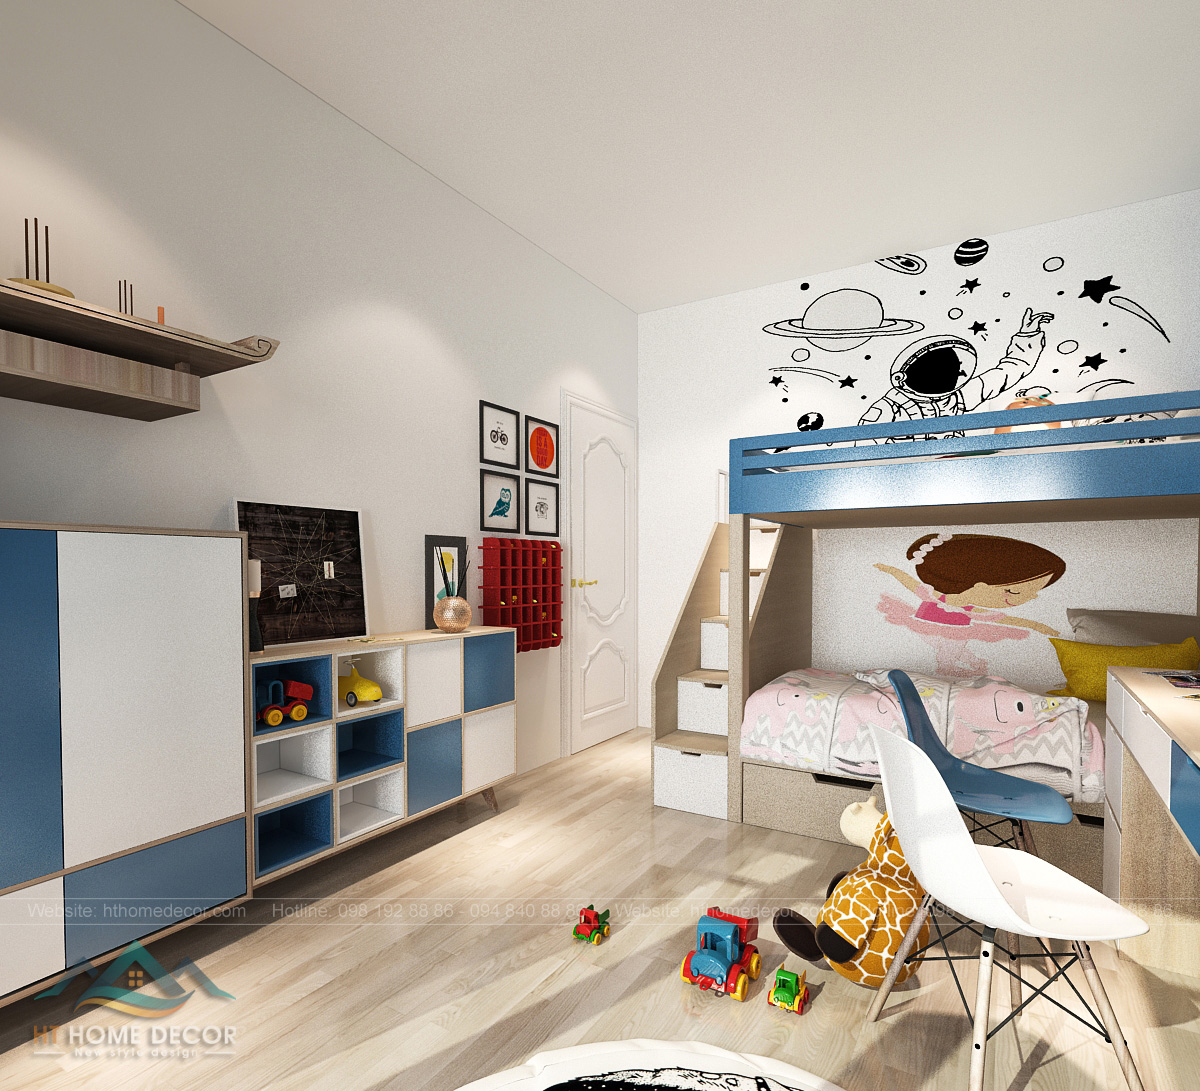 Ở gian phòng dành cho các bé được thiết kế màu sắc sặc sỡ phù hợp với lứa tuổi. Trắng xanh dương là màu chủ đạo cho căn phòng.